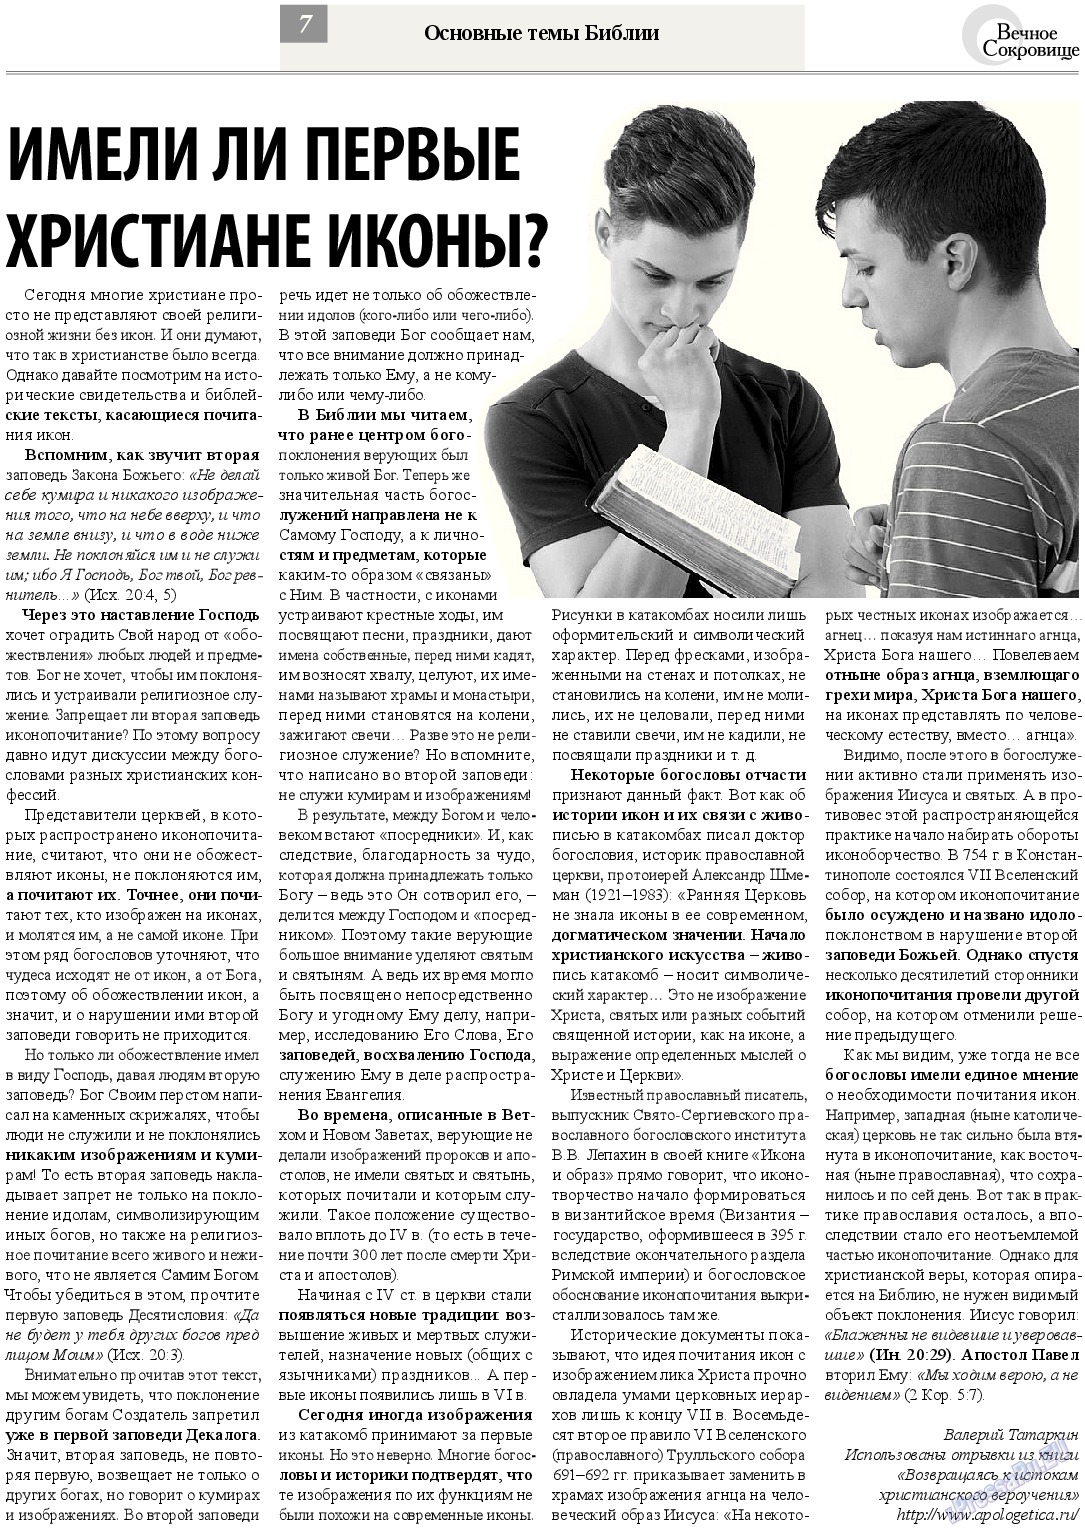 Вечное сокровище, газета. 2013 №4 стр.7